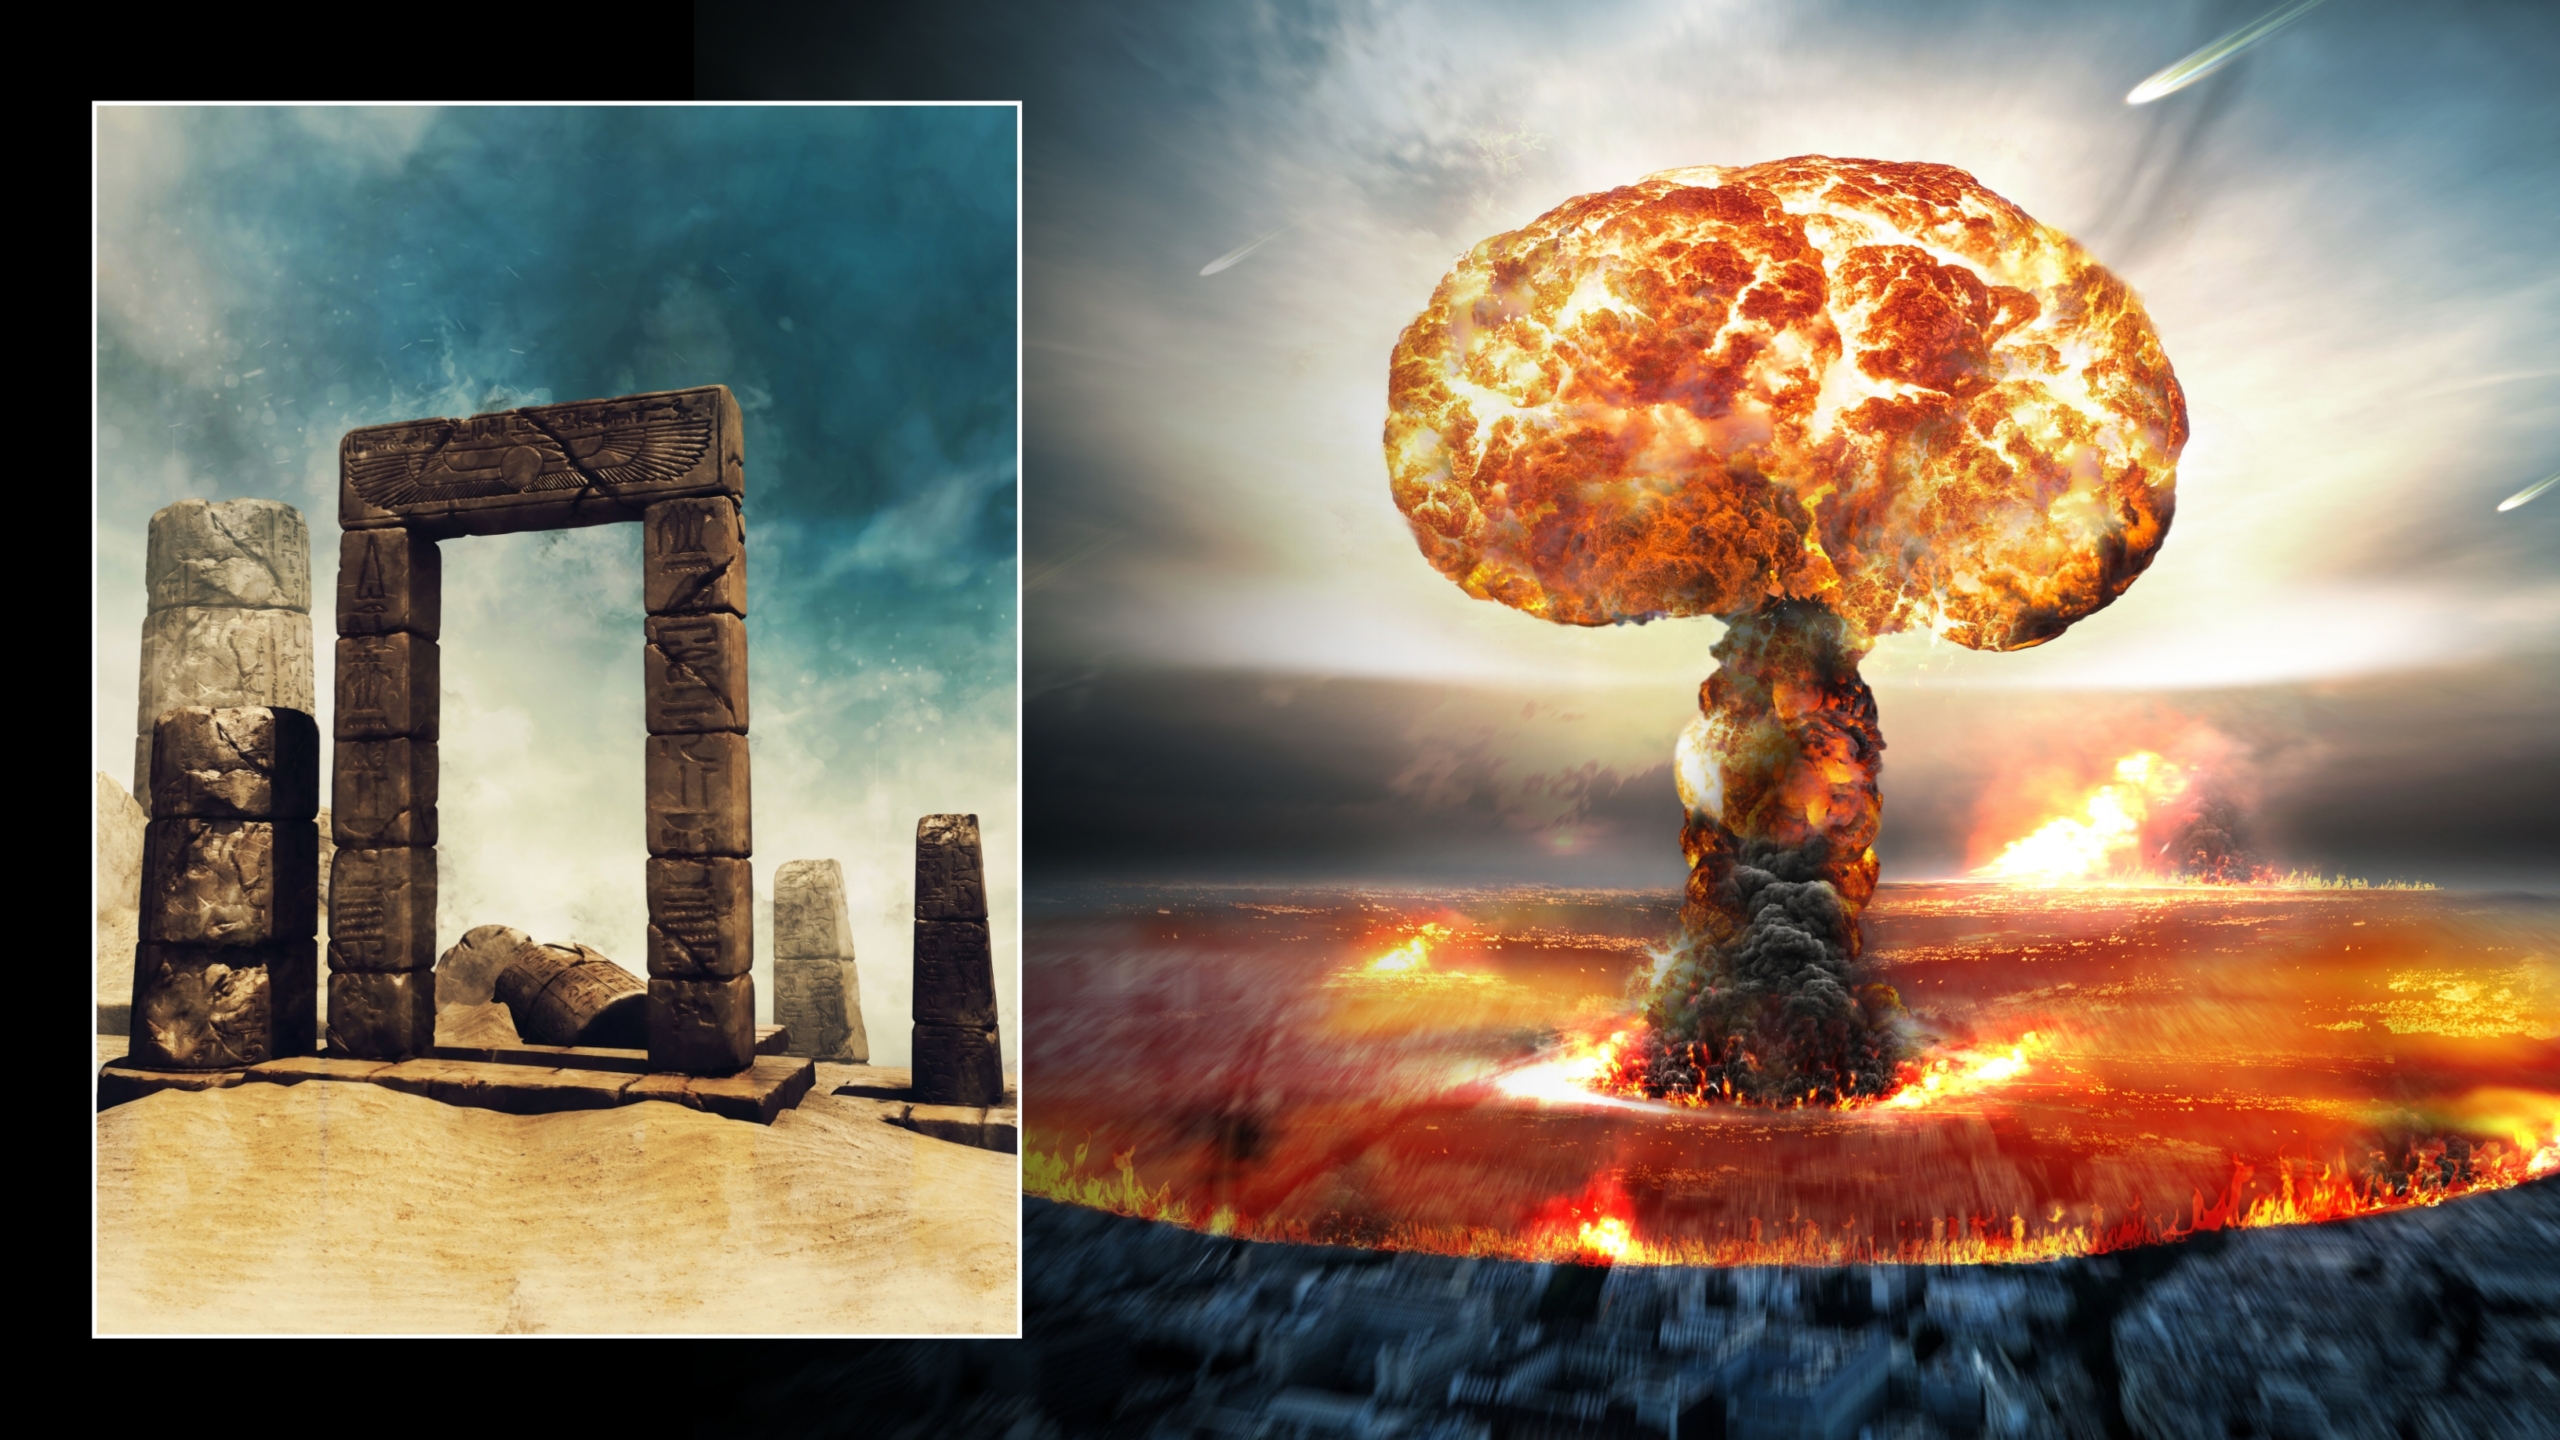 Illustrationen von Atomexplosion und alter Ruine in der Wüste. © Bildnachweis: Obsidianfantacy & Razvan Lonut Dragomirescu | Lizenziert von DreamsTime.com (redaktionelle/kommerzielle Nutzung Stockfotos)